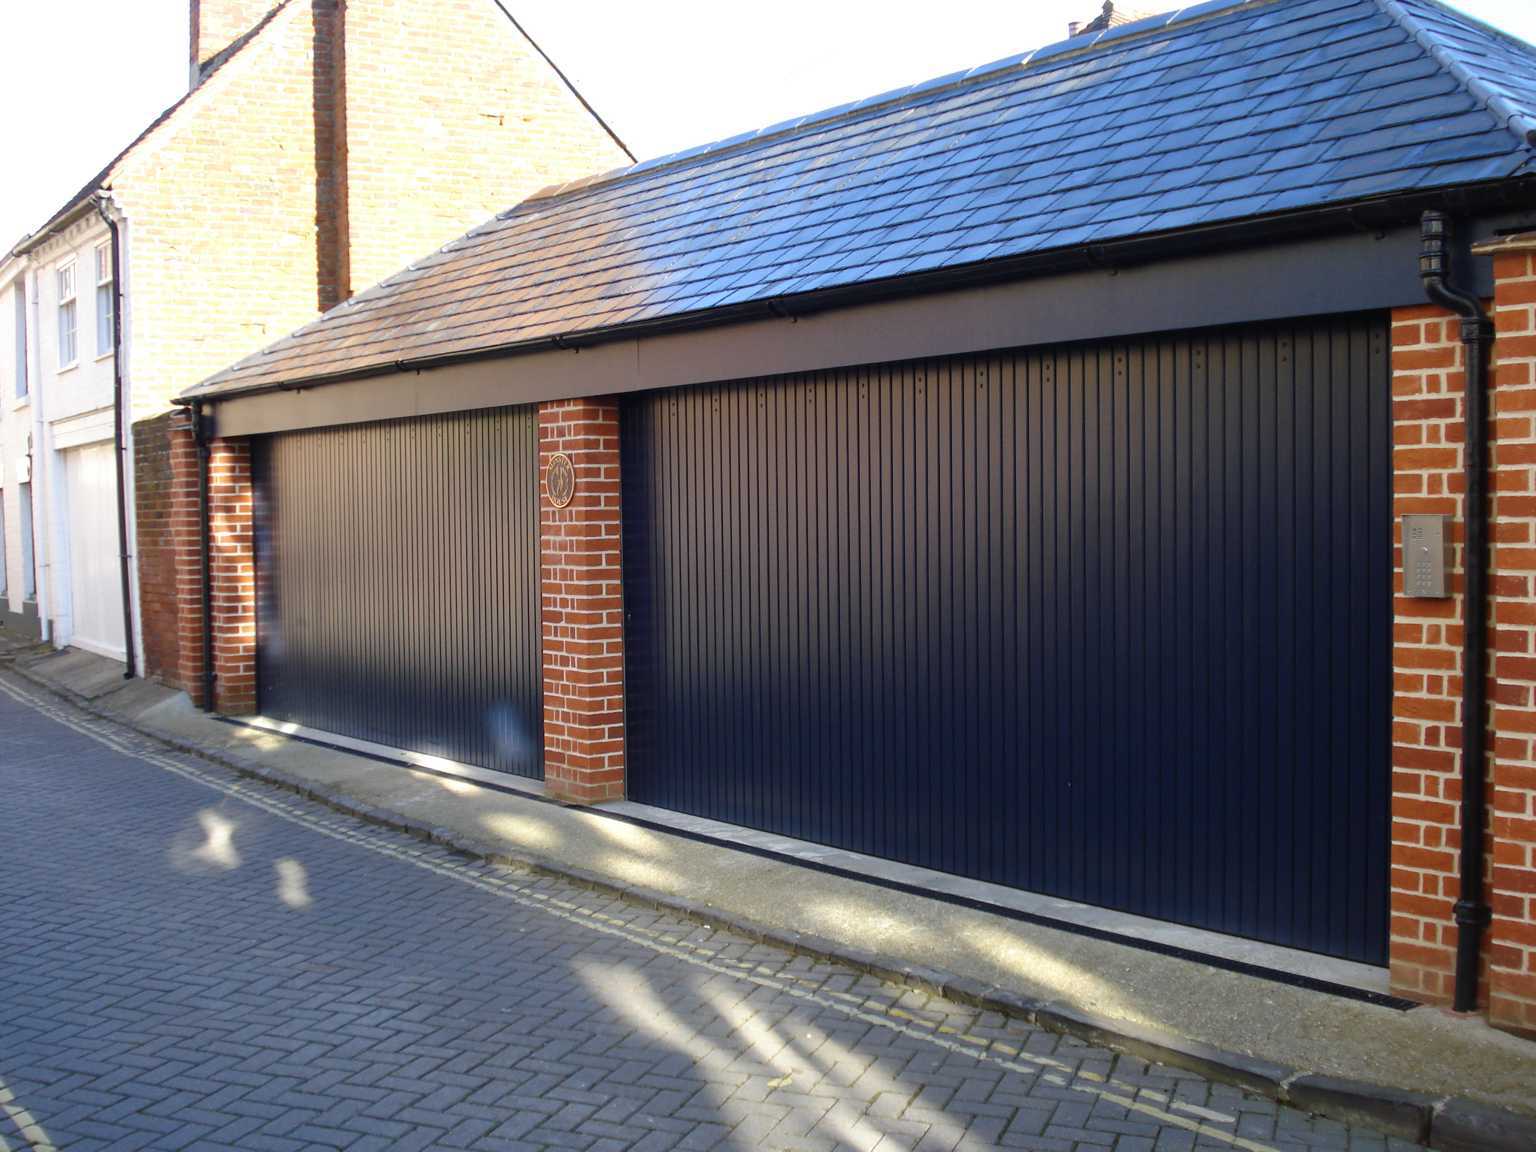 A custom garage door cover